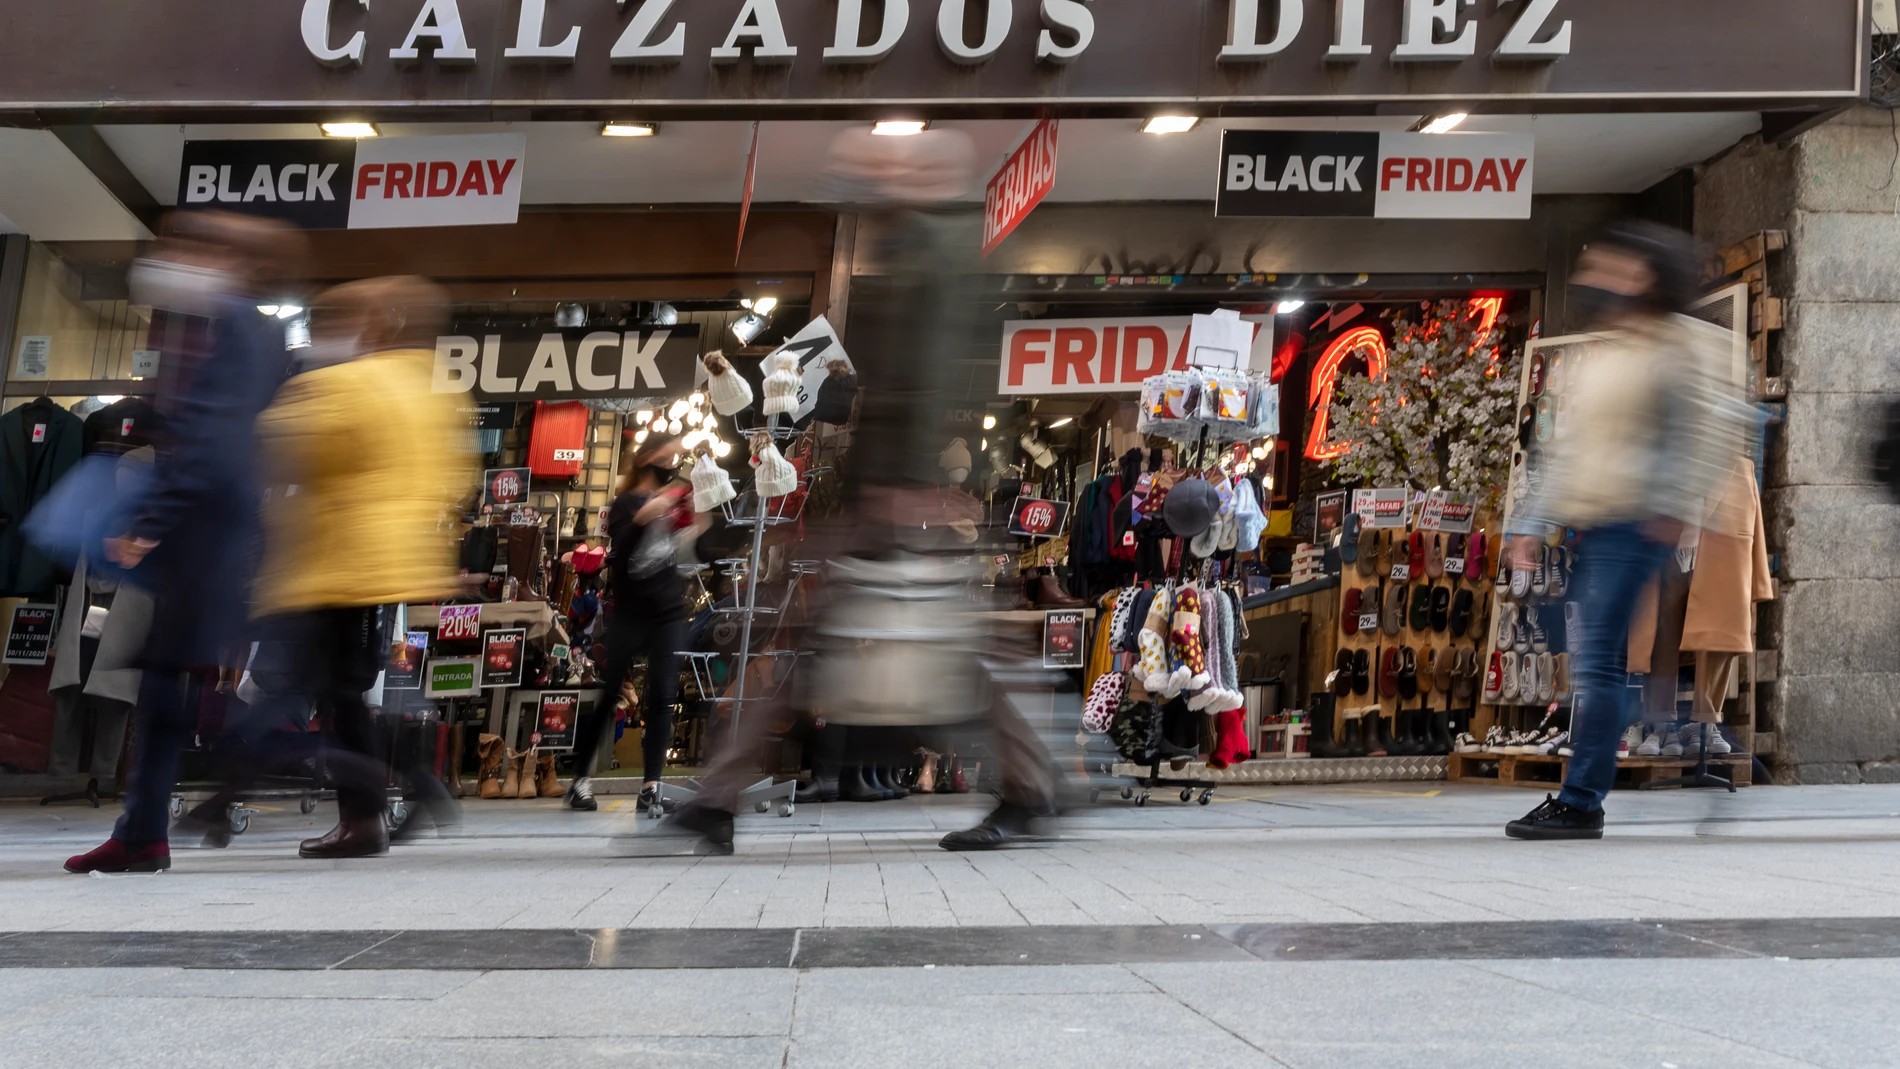 El comercio del centro de Madrid se prepara para el Black Friday 2020, anunciando sus ofertas y rebajas en los escaparates de las tiendas